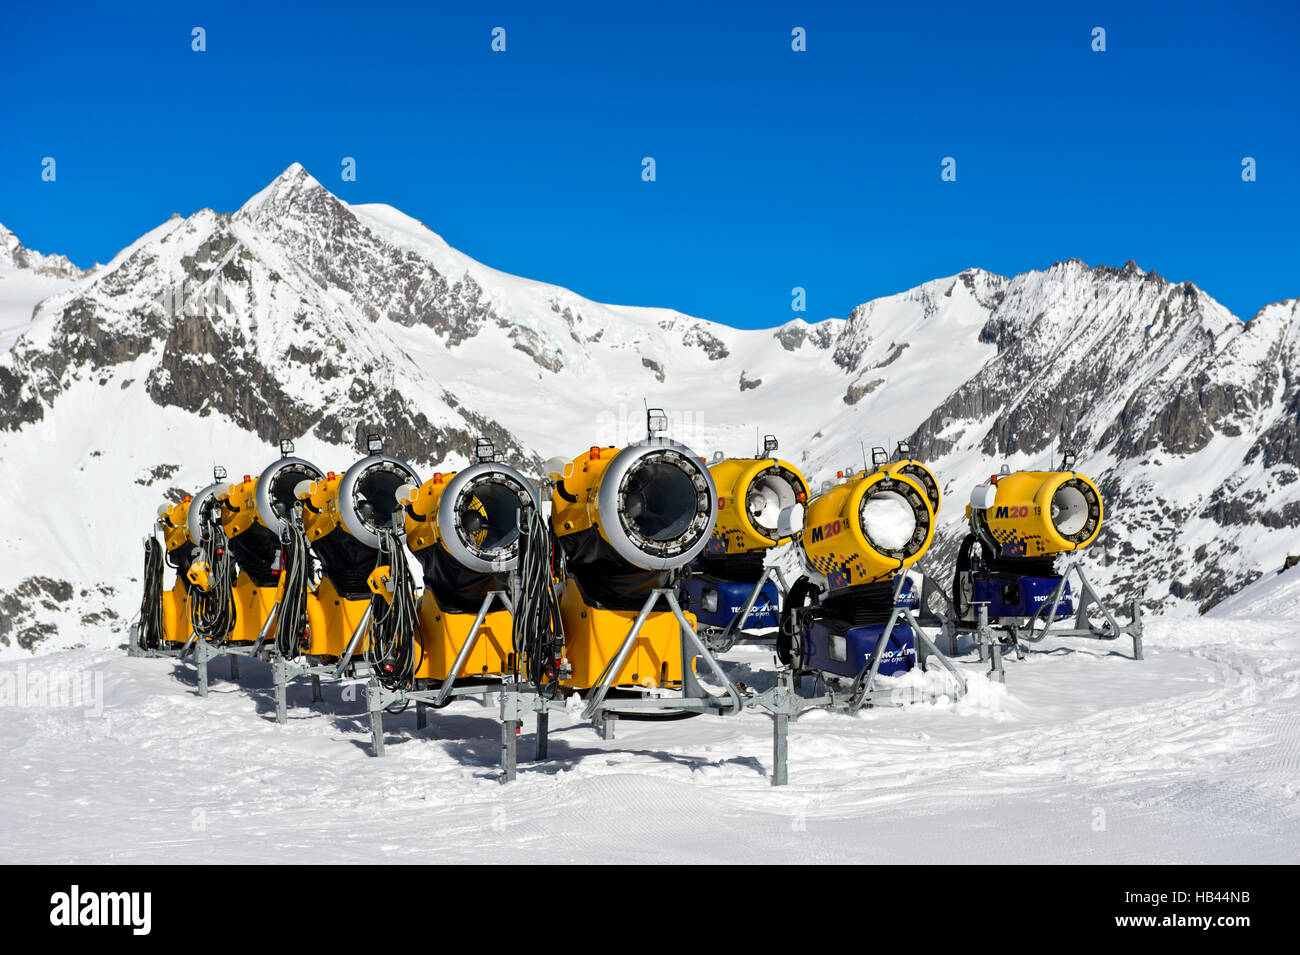 Batterie of TechnoAlpin snow cannons in the skiing area Aletscharena, Bettmeralp, Valais, Switzerland Stock Photo